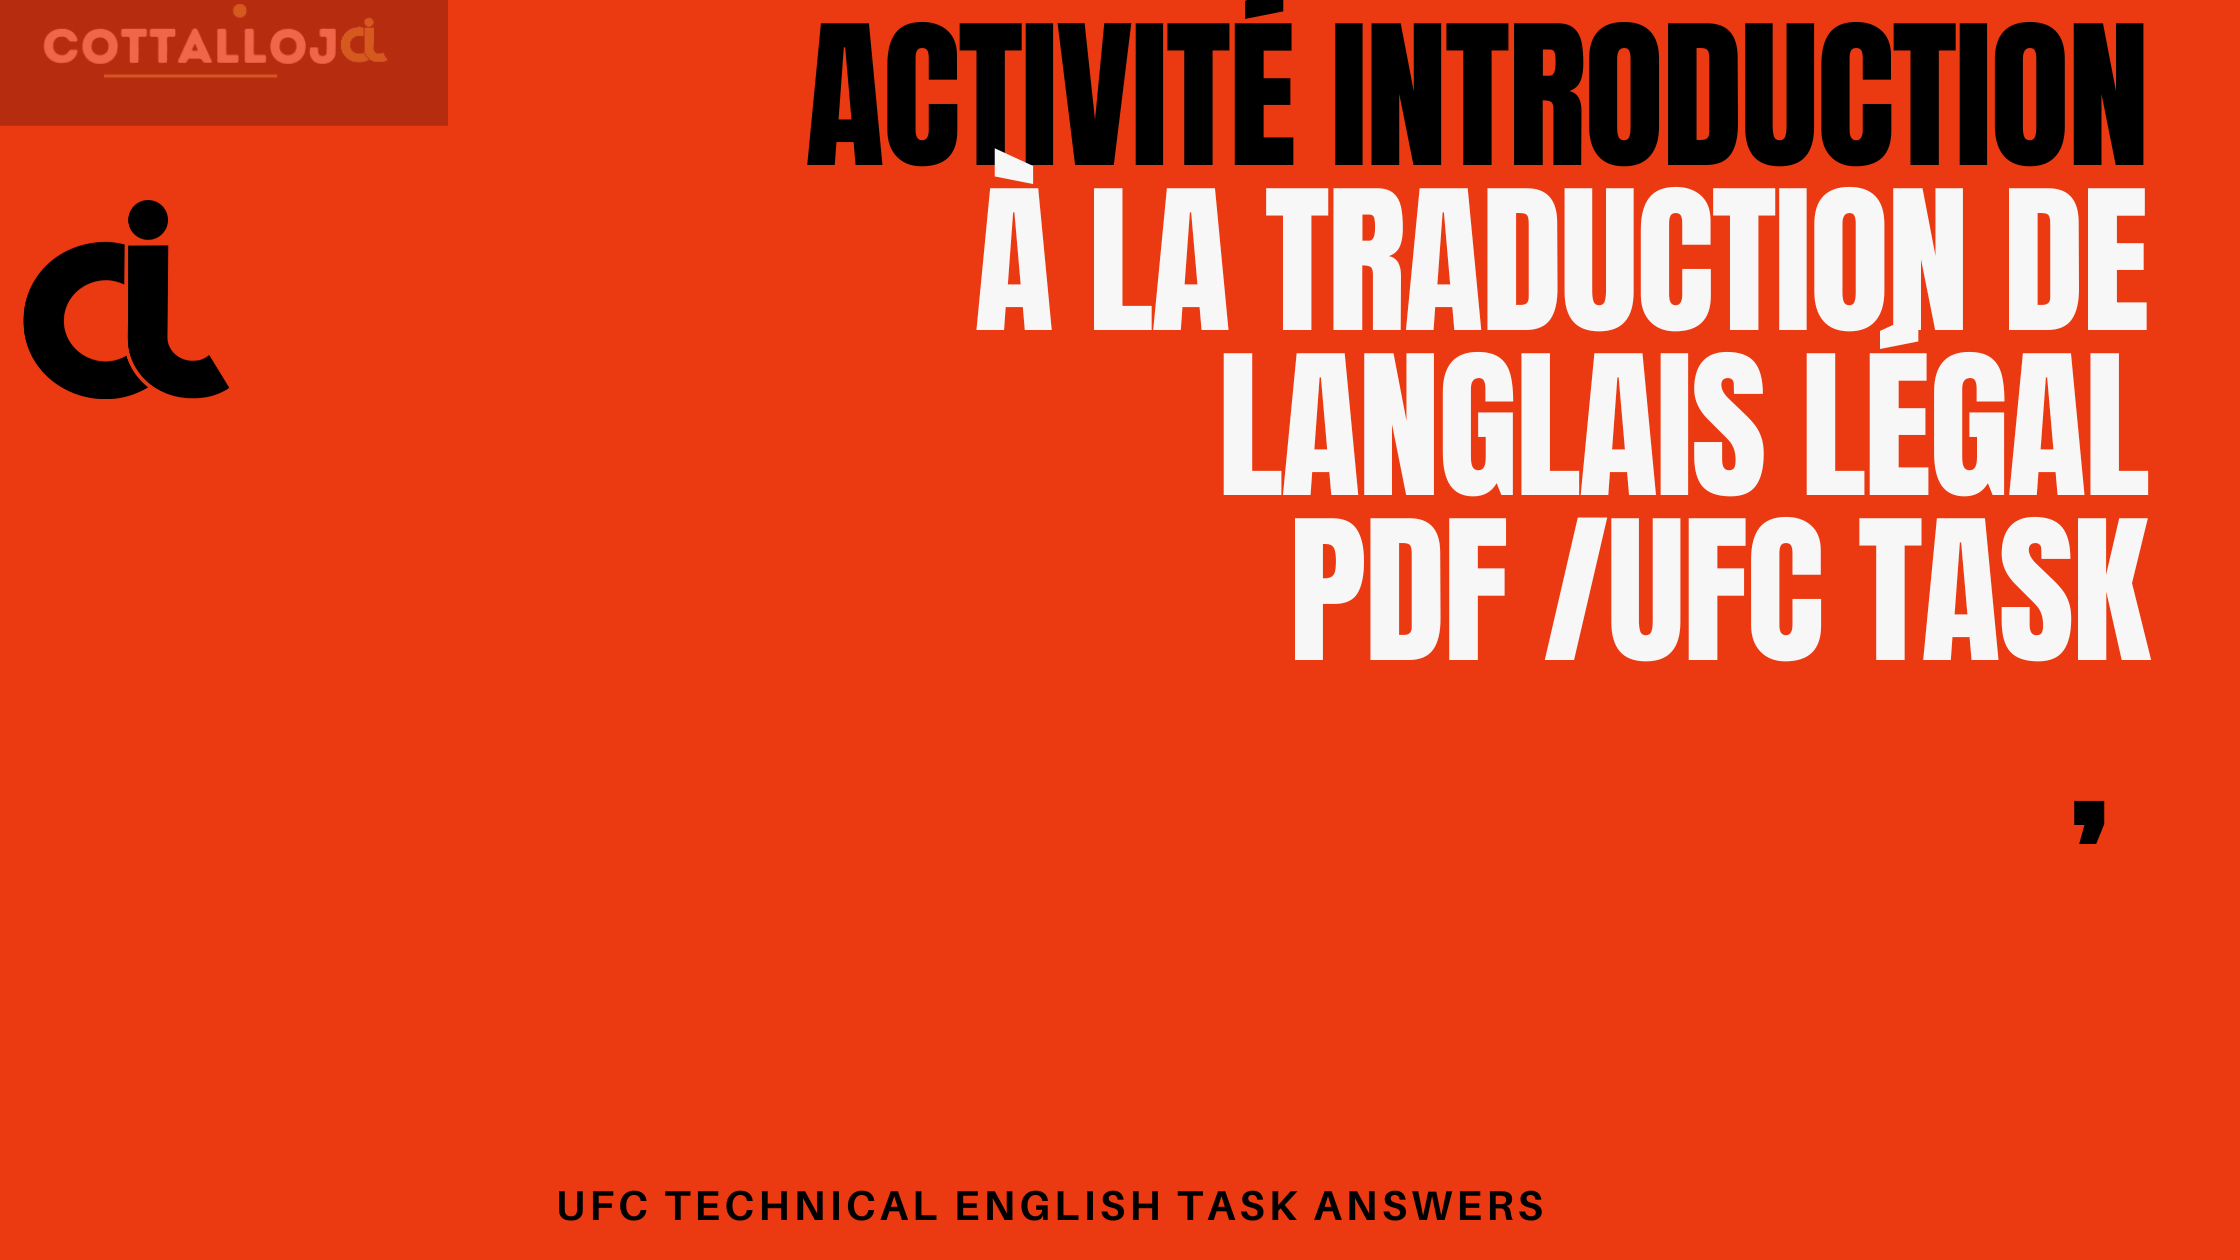 Activité Introduction à la traduction de lAnglais légal pdf /UFC Task